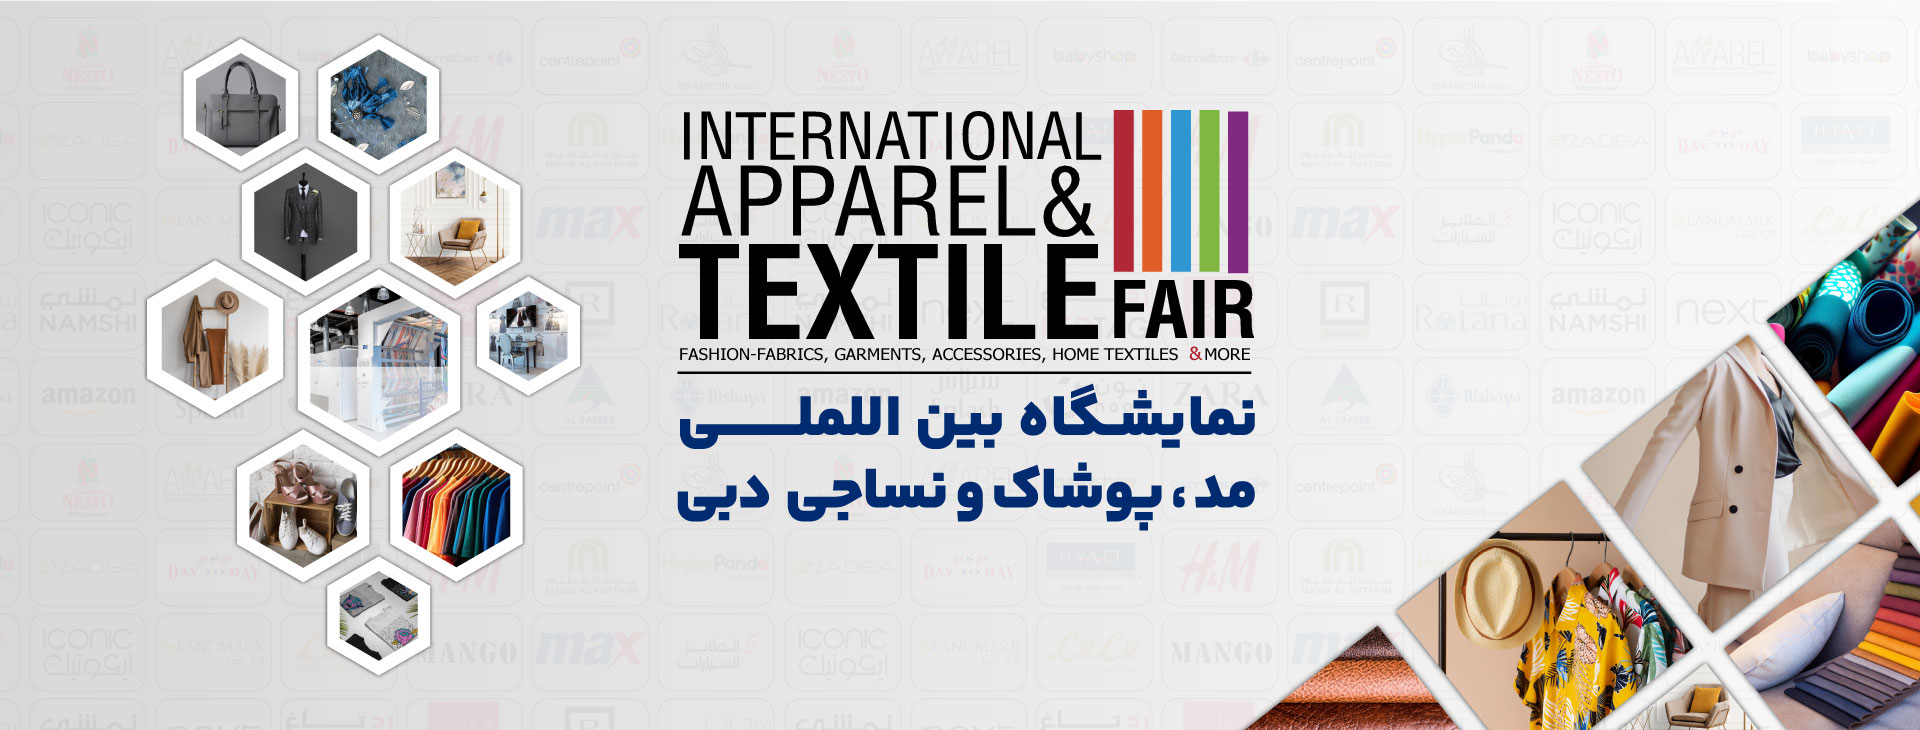 نمایشگاه بین المللی صنعت نساجی و پوشاک (IATF) دبی امارات متحده عربی مرکز نمایشگاهی DWTC